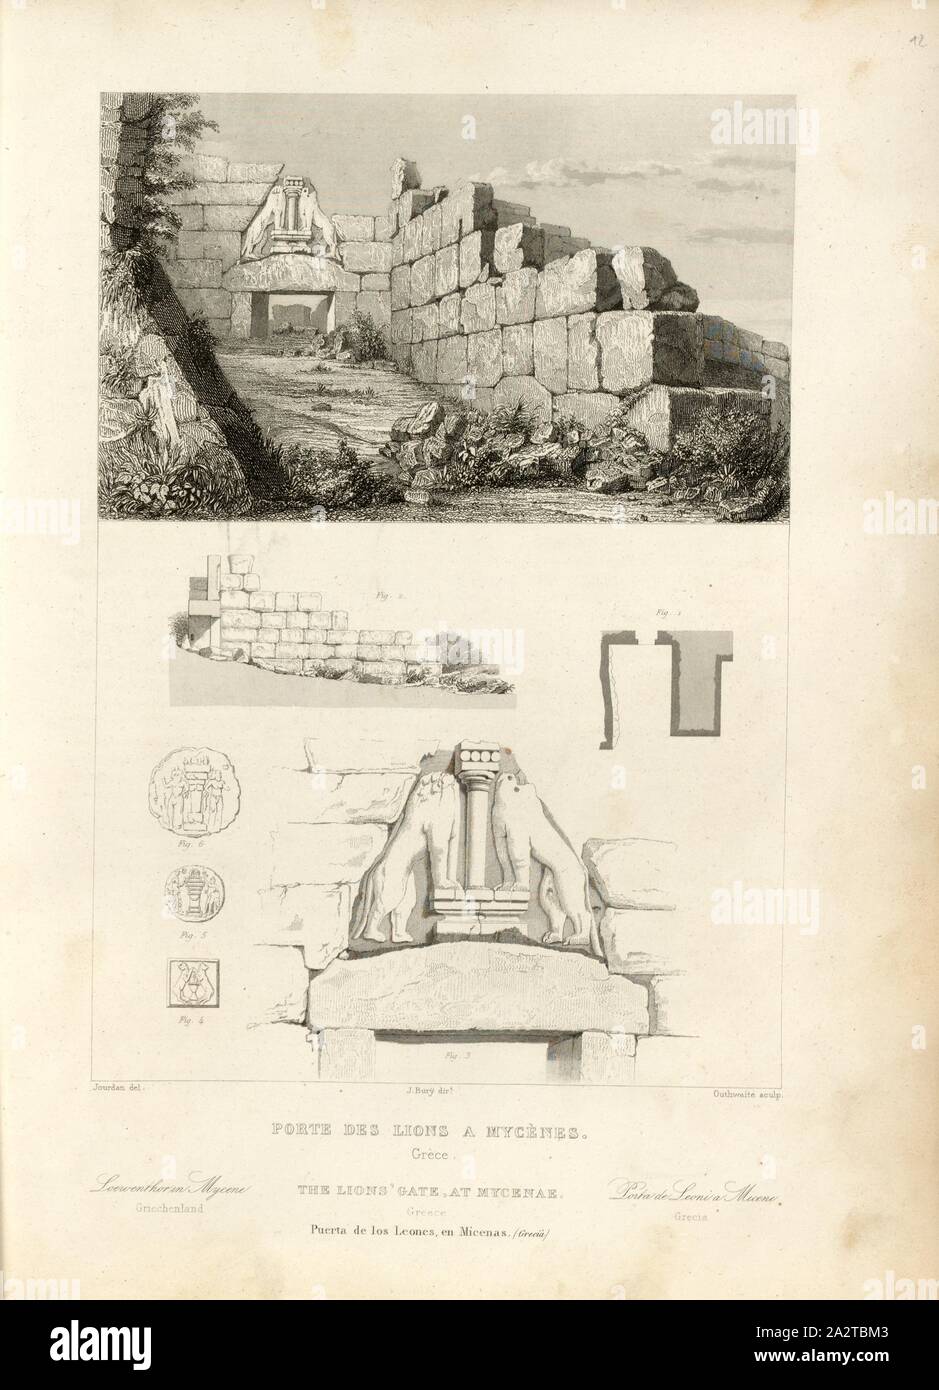 Lions Gate in Mycenae, Lion Gate in Mycenae, signed: Jourdan (del.), J. Bury (dir.), Outhwaite (sculp.), Fig. 19, p. 93, Jourdan (del.), Bury, J. (dir.), Outhwaite, Jean-Jacques (sculp.), 1853, Jules Gailhabaud: Monuments anciens et modernes. Bd. 1. Paris: Librairie de Firmin Didot frères, 1853 Stock Photo